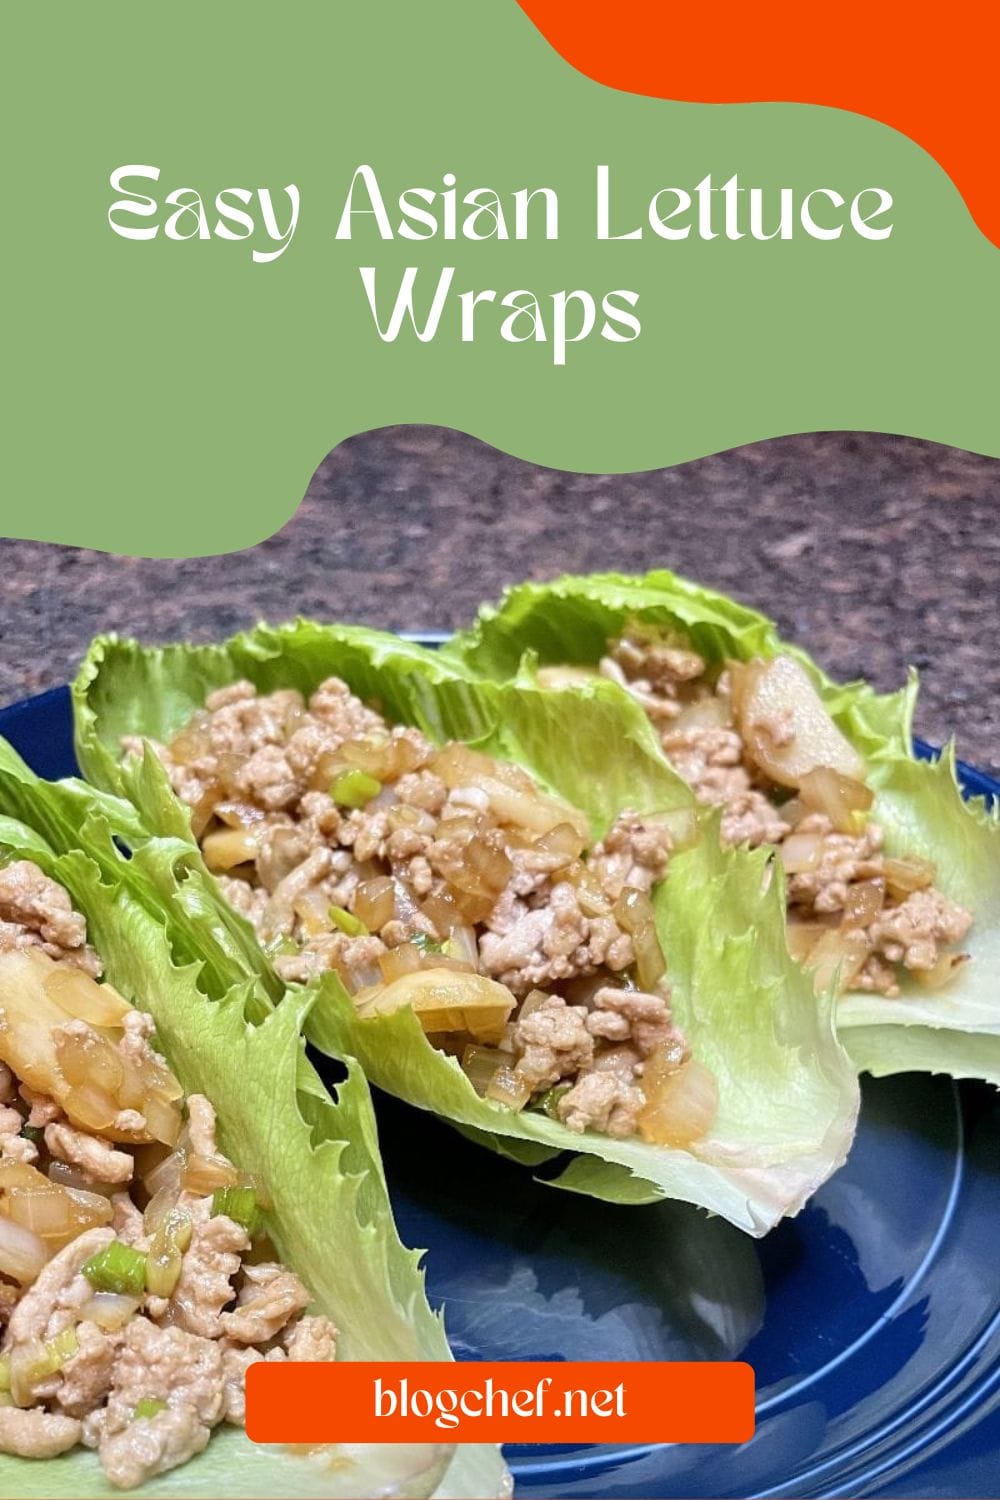 Easy Asian lettuce wraps.